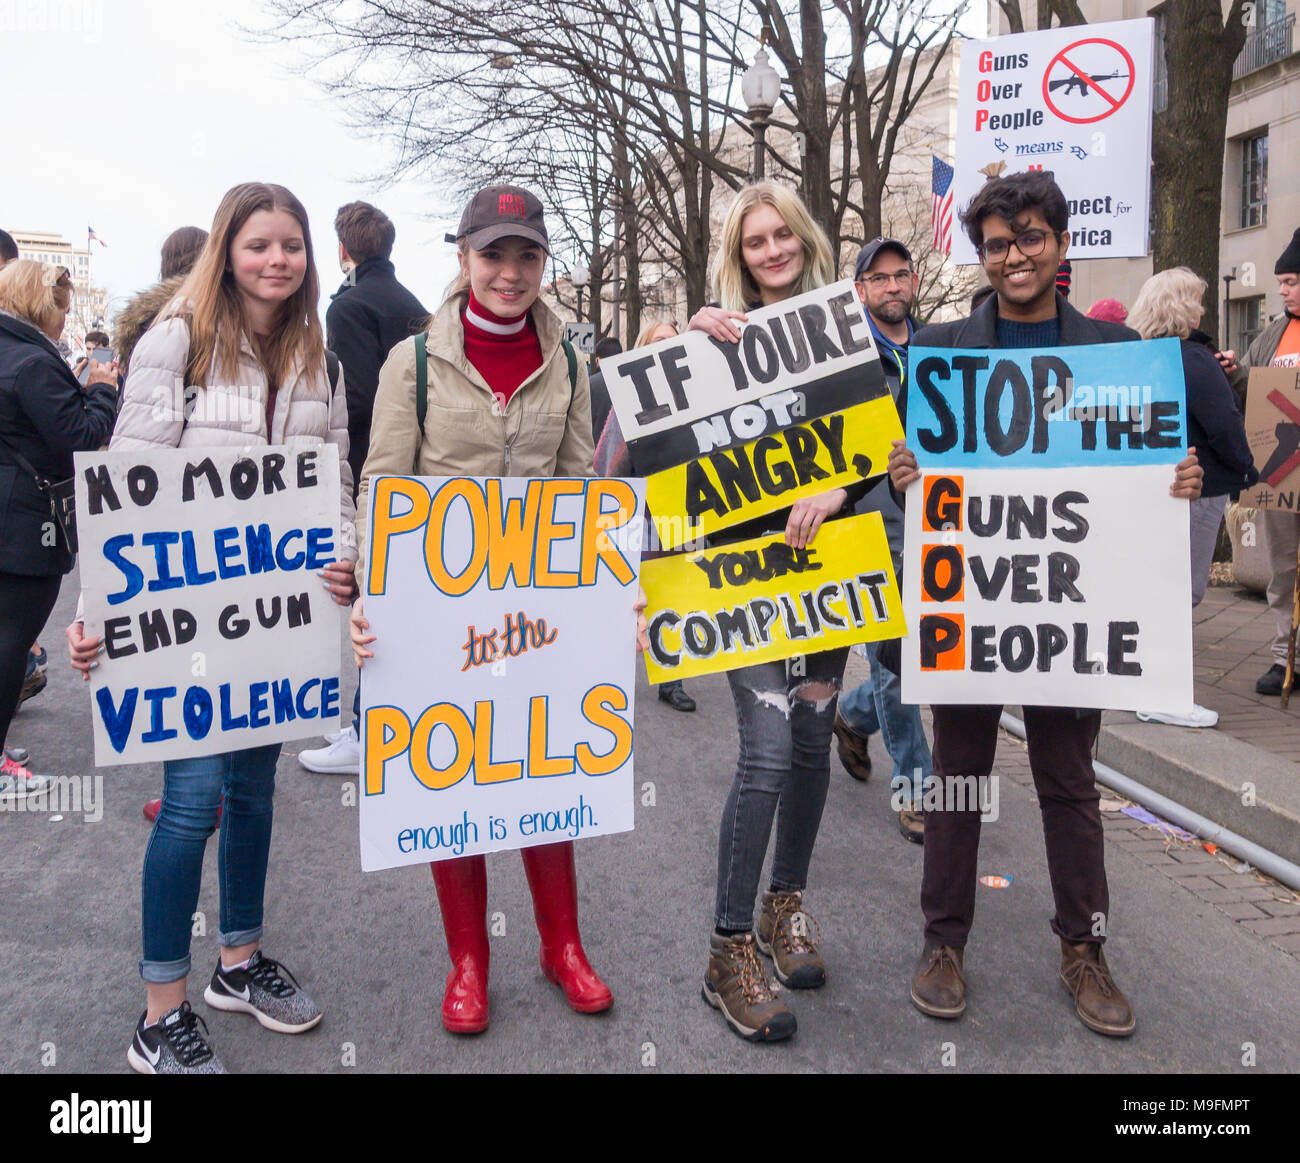 WASHINGTON, DC, USA - junge Demonstranten im März für unser Leben Demonstration, Protest gegen Waffengewalt. Stockfoto